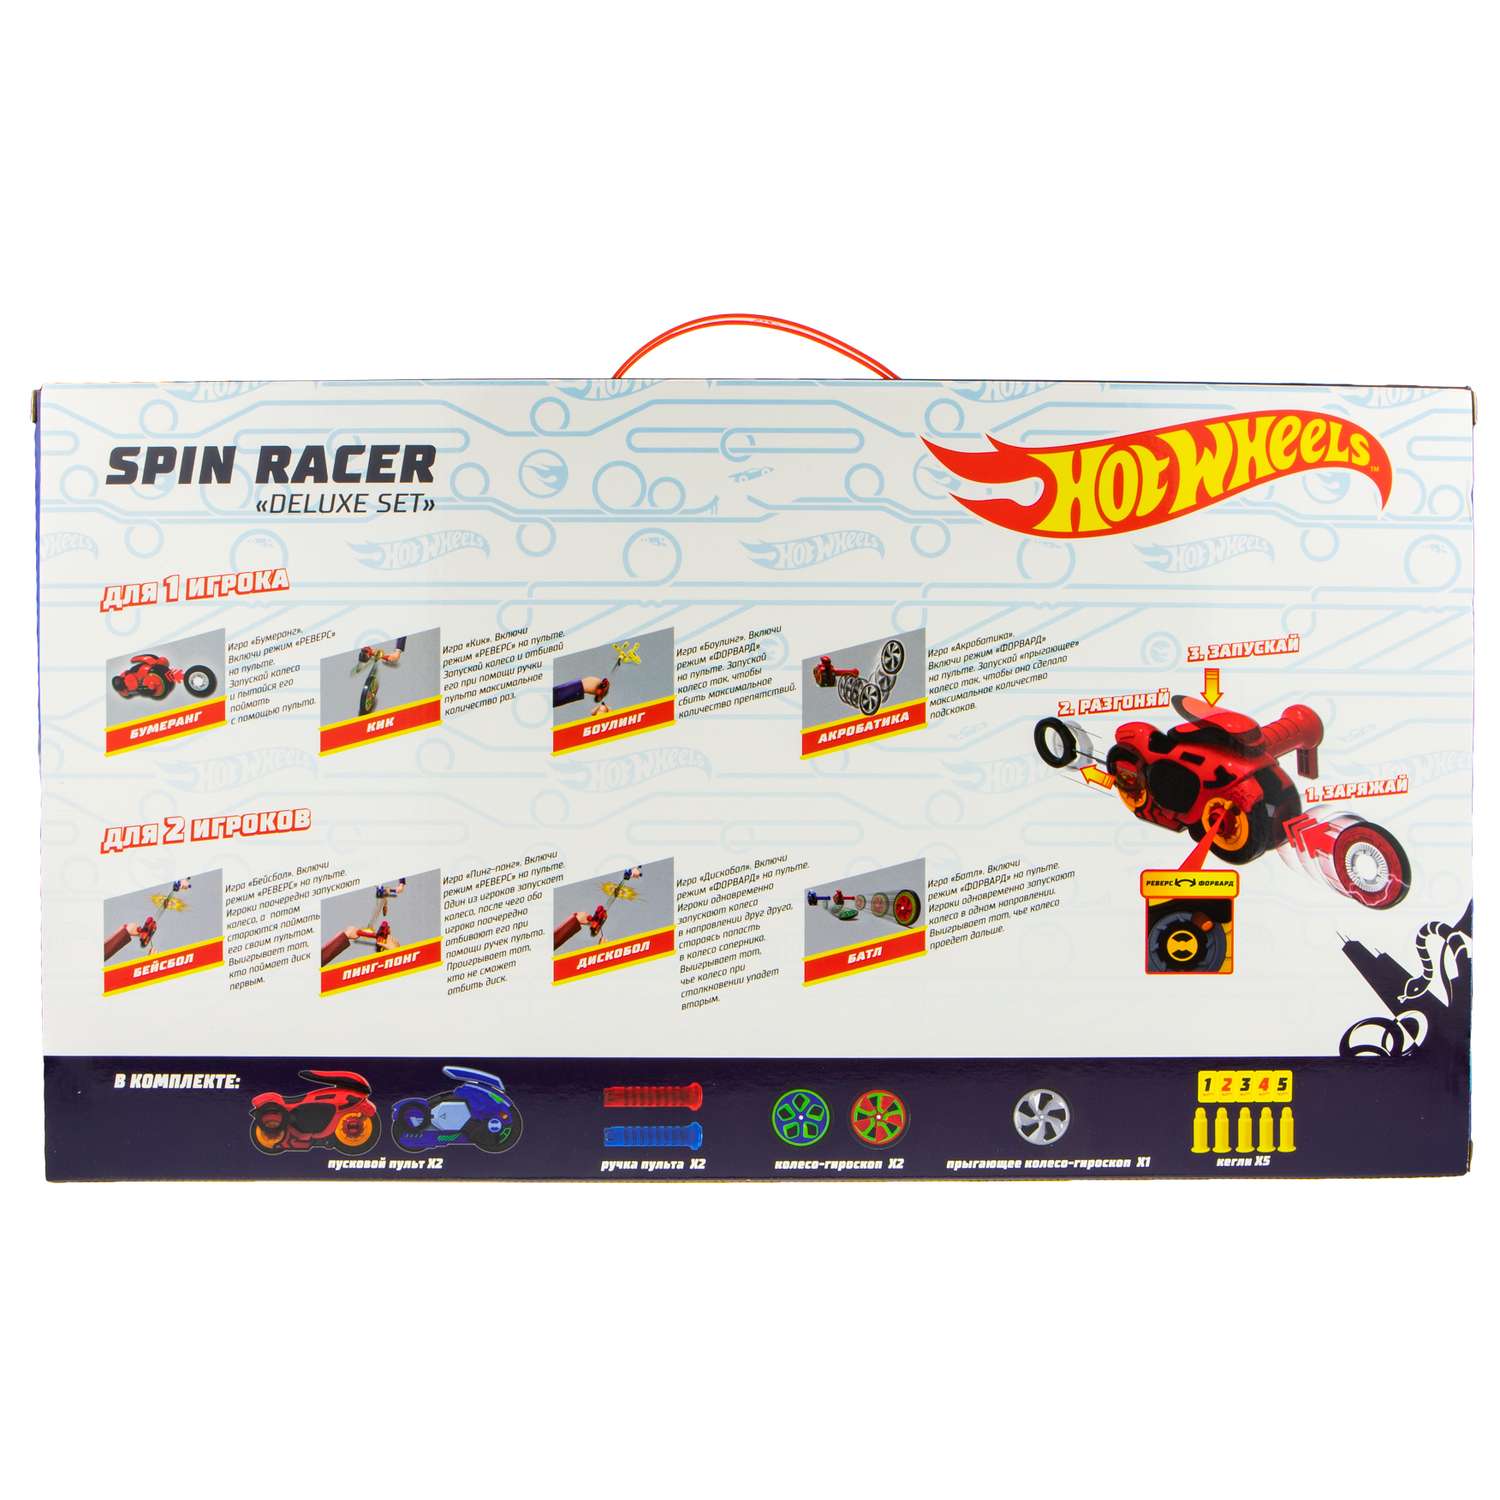 Игровой набор Hot Wheels Spin Racer Deluxe Set 2 игрушечных мотоцикла с колесами-гироскопами Т19375 - фото 13